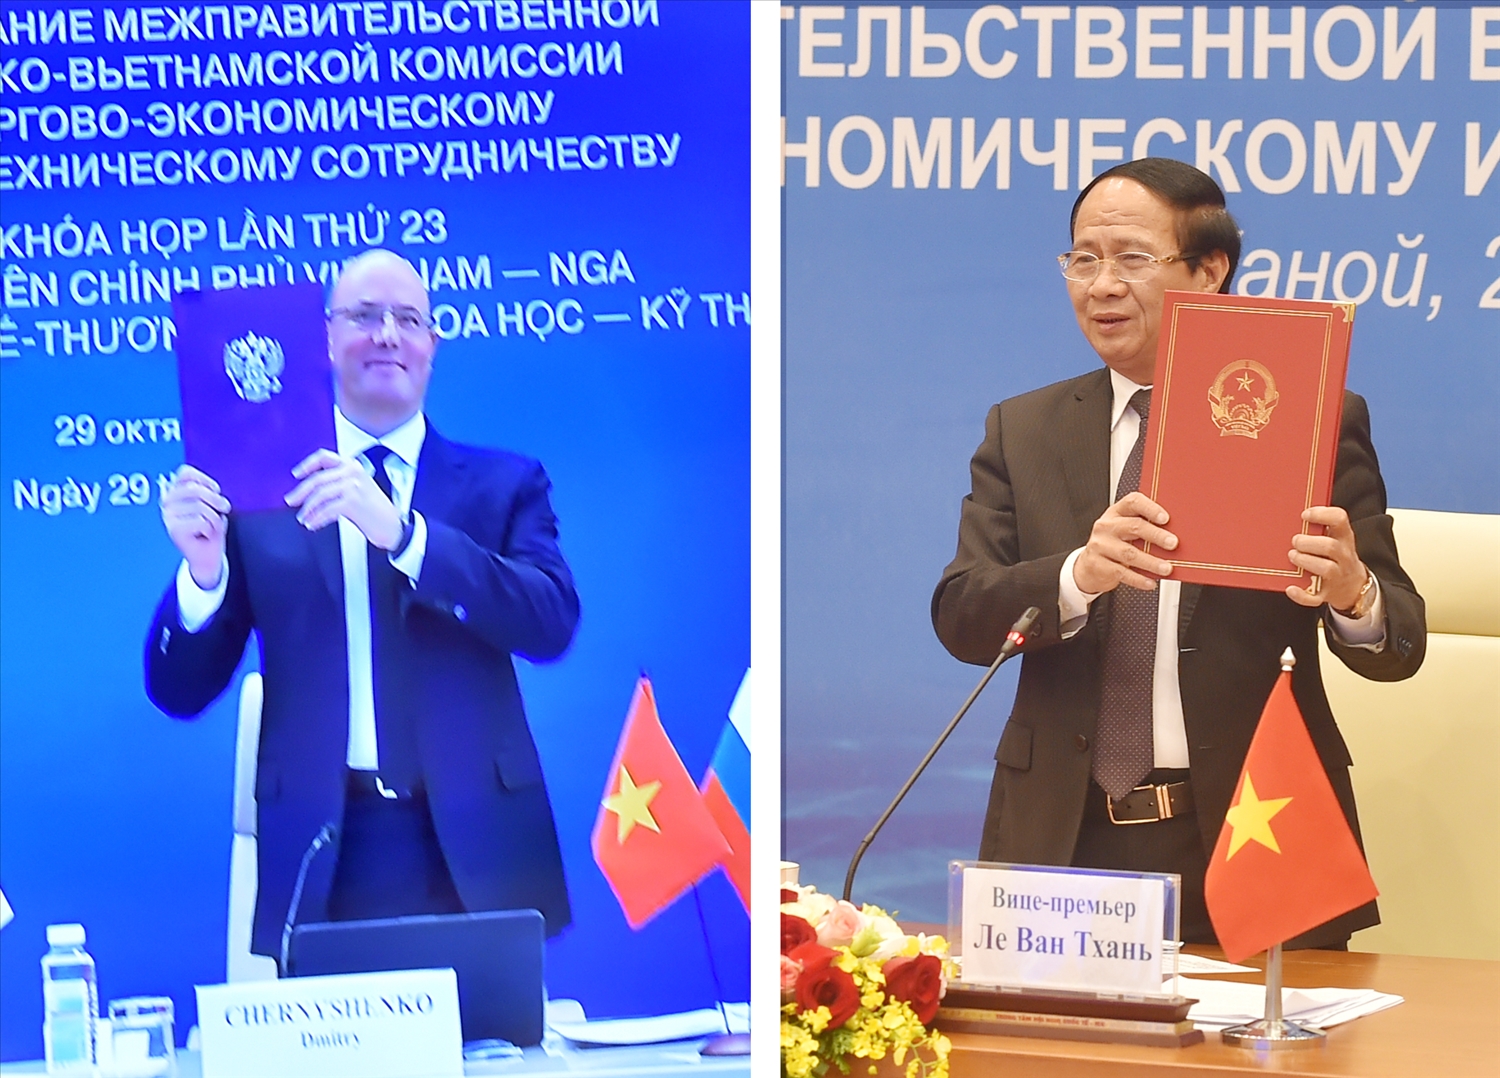 Kết thúc Khóa họp, hai Phó Thủ tướng đã ký Biên bản Khóa họp lần thứ 23 và thống nhất phiên họp tiếp theo sẽ được tổ chức tại Việt Nam vào năm 2022 - Ảnh VGP/Đức Tuân